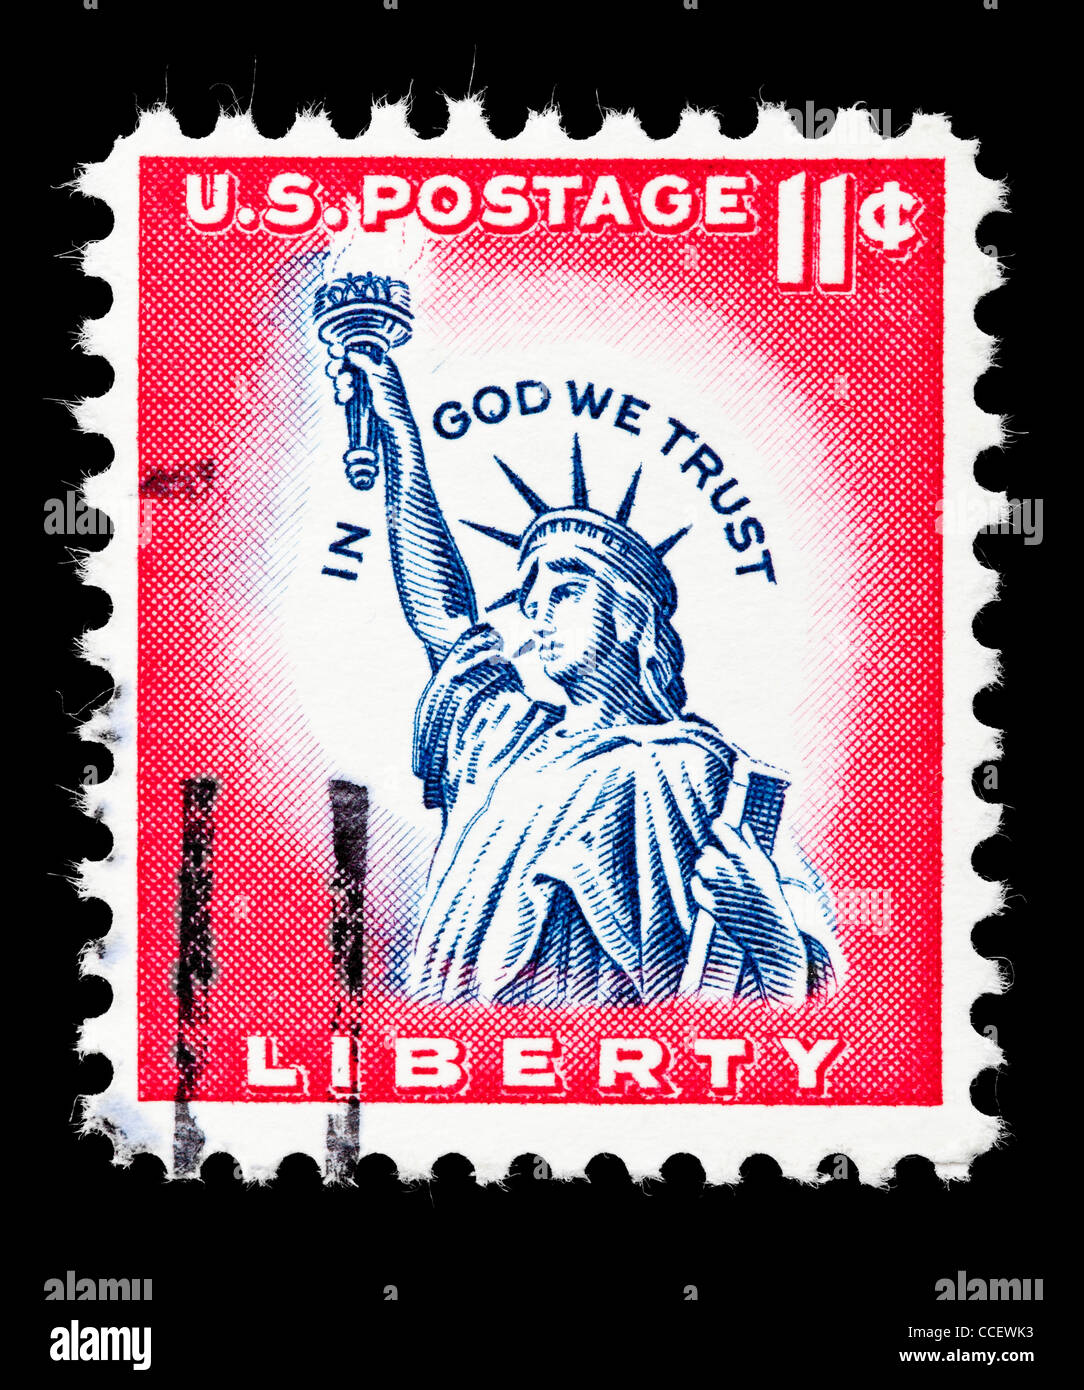 Sello: Postales de los Estados Unidos, la Estatua de la Libertad, el 11% de 1961, estampado Foto de stock